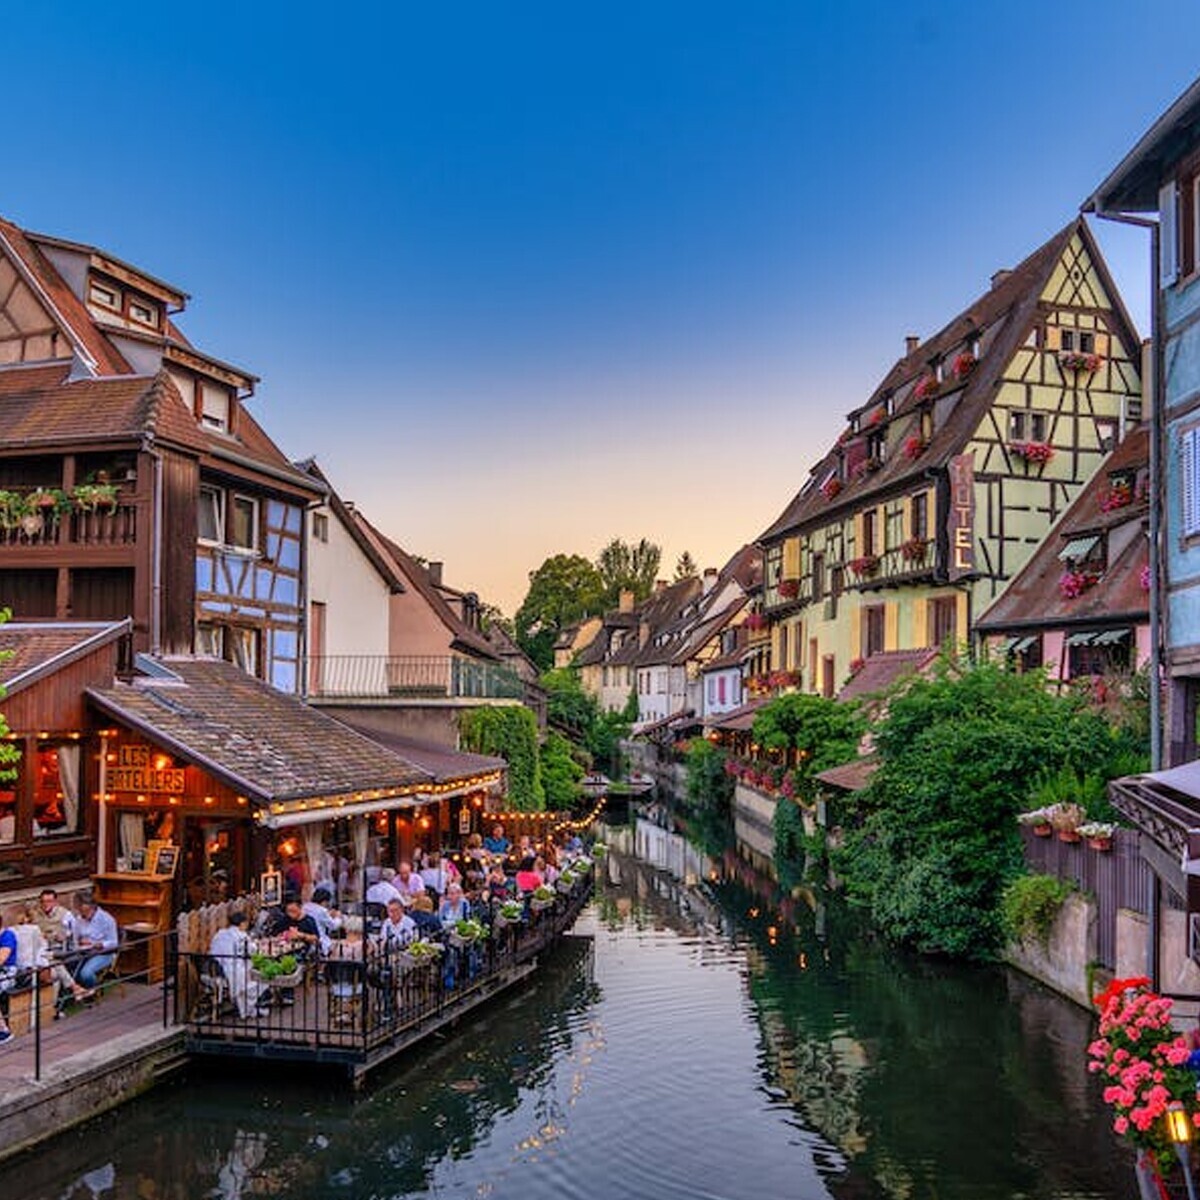 Thy İle 5 Gün Alsace; Almanya, Fransa, İsviçre Turu (Bayramlarda Geçerli)